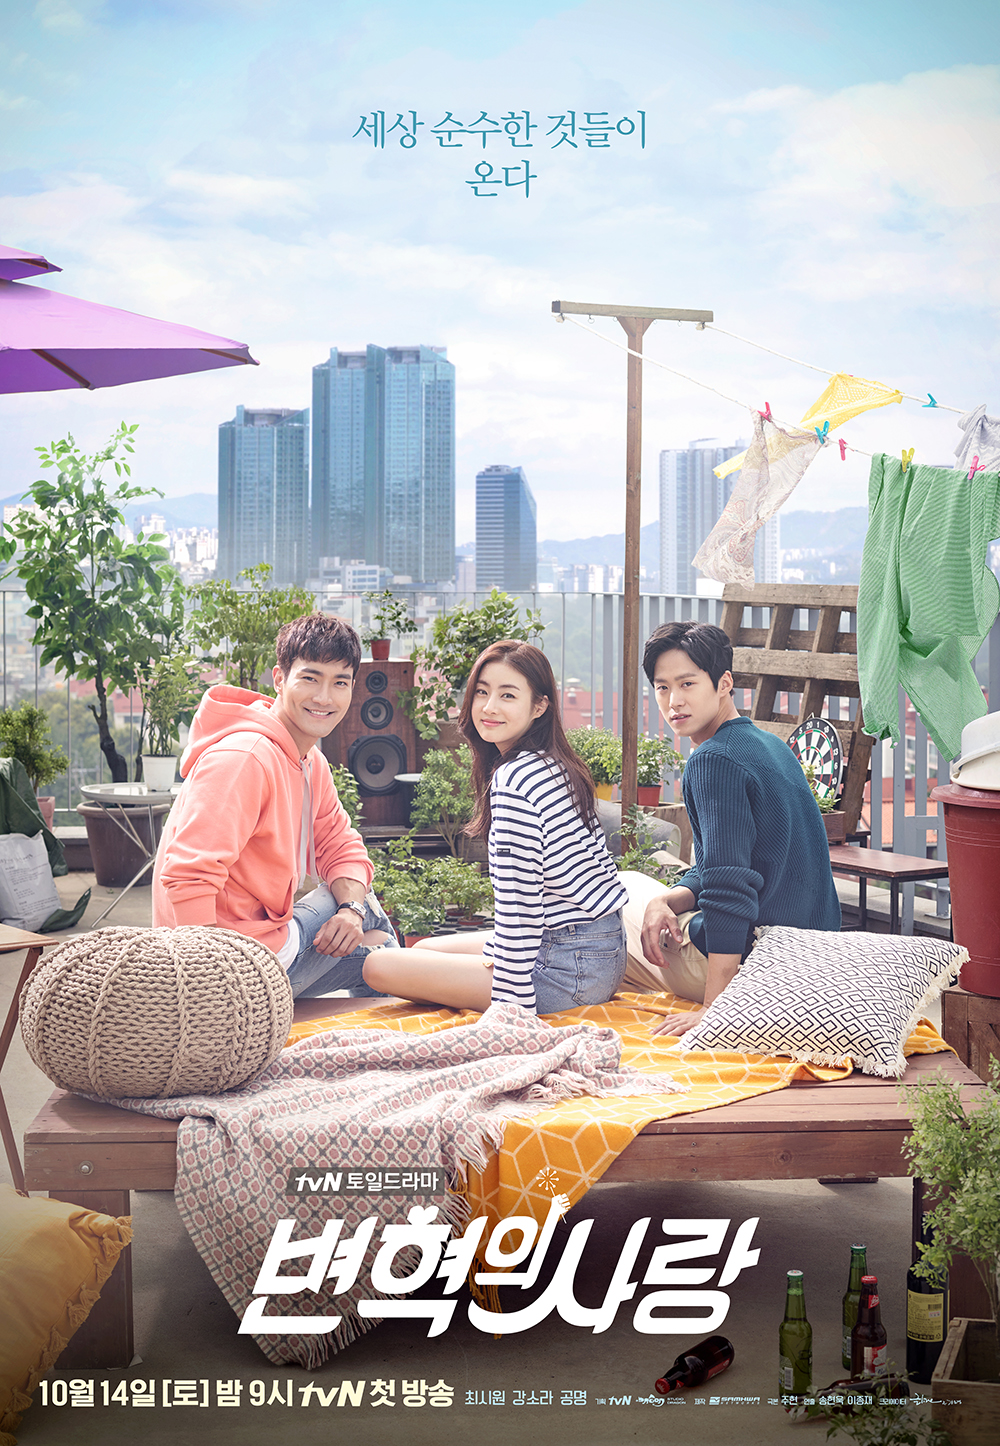 harper bazaar phim cua choi si won 12 - 16 bộ phim đáng chú ý của chàng “thần tượng tài năng” Choi Si Won